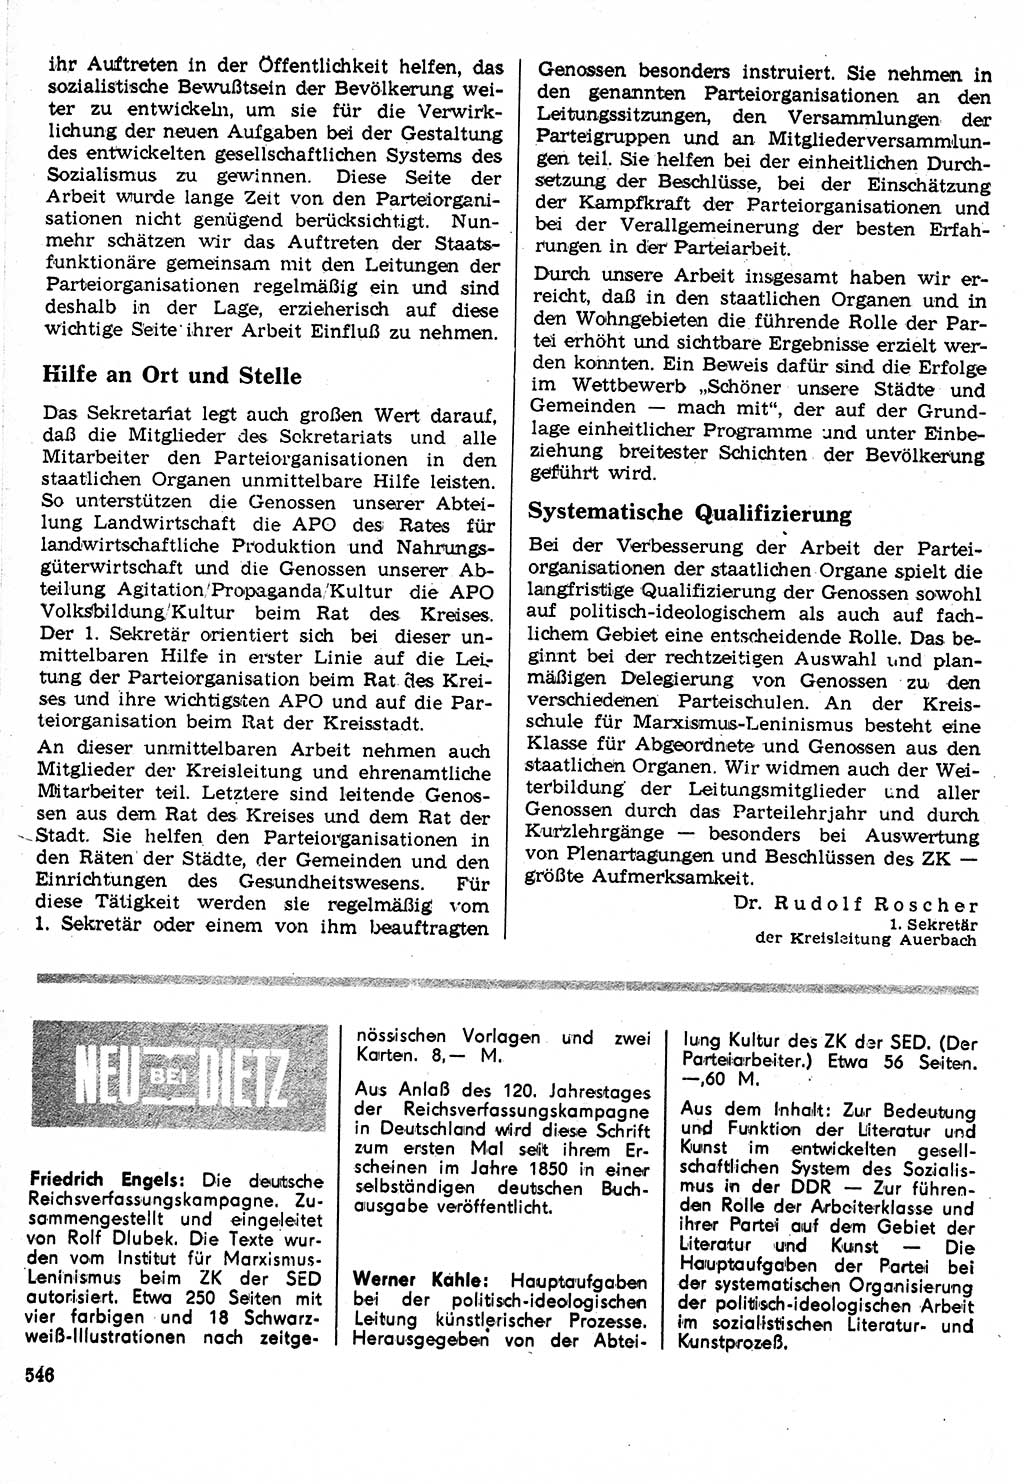 Neuer Weg (NW), Organ des Zentralkomitees (ZK) der SED (Sozialistische Einheitspartei Deutschlands) für Fragen des Parteilebens, 24. Jahrgang [Deutsche Demokratische Republik (DDR)] 1969, Seite 546 (NW ZK SED DDR 1969, S. 546)